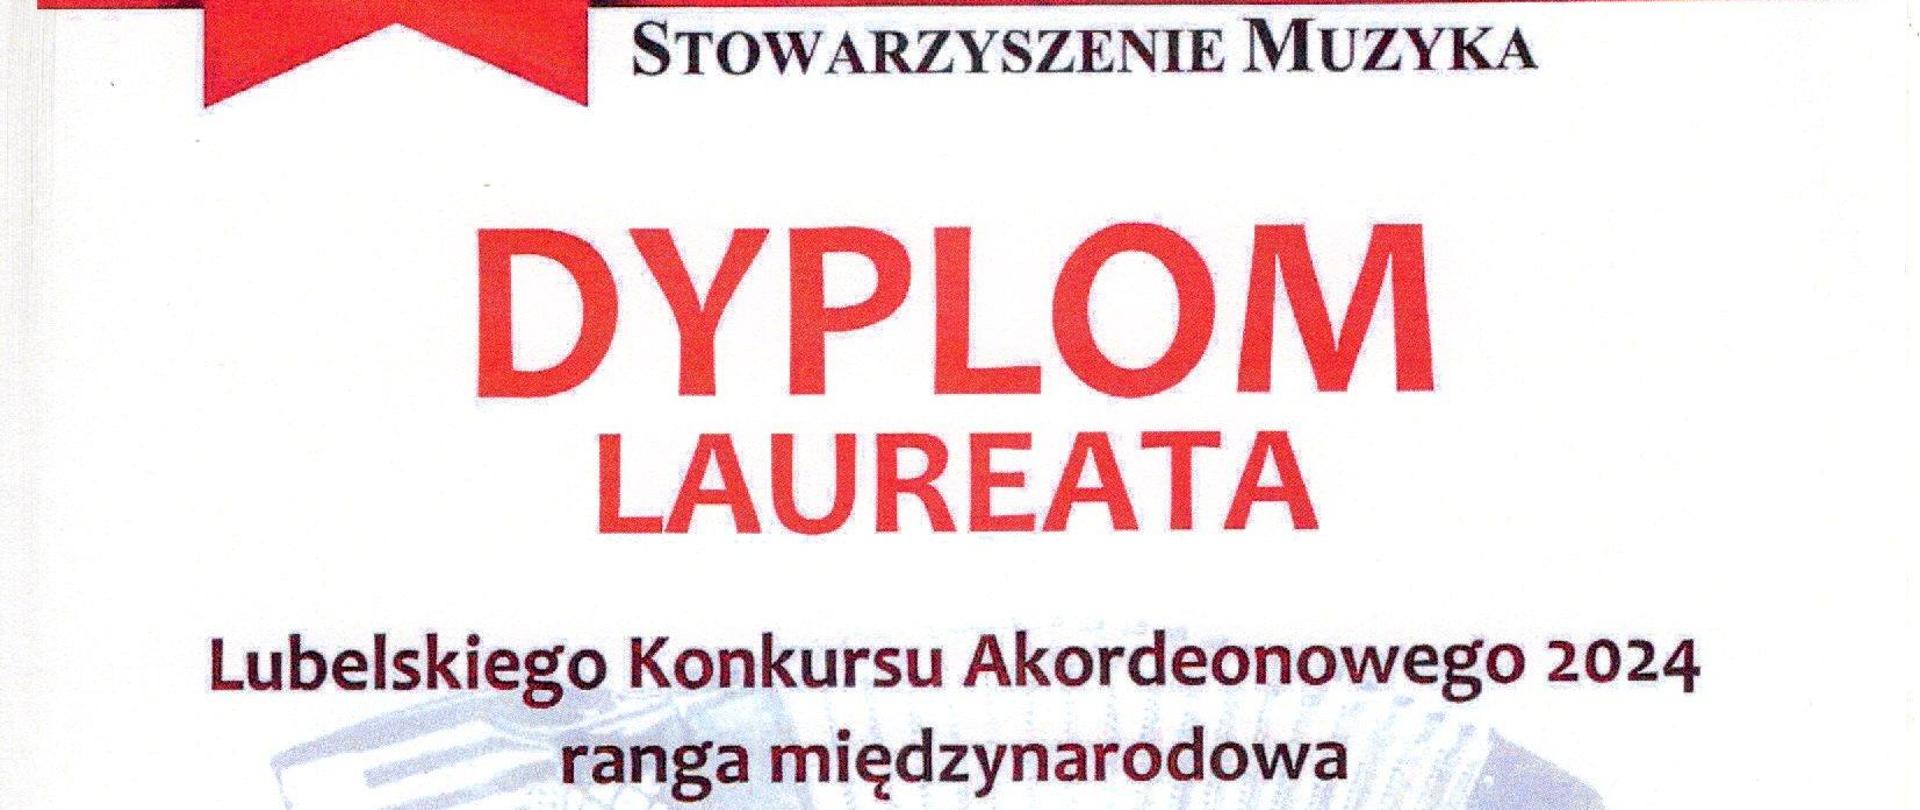 Zdjęcie przedstawia na białym tle napis dyplom laureata Lubelskiego Konkursu Akordeonowego 2024 ranga międzynarodowa oraz informację, że wyróżnienie otrzymuje Lena Waśkowska - Kicaj uczennica Zbigniewa Kowalczyka